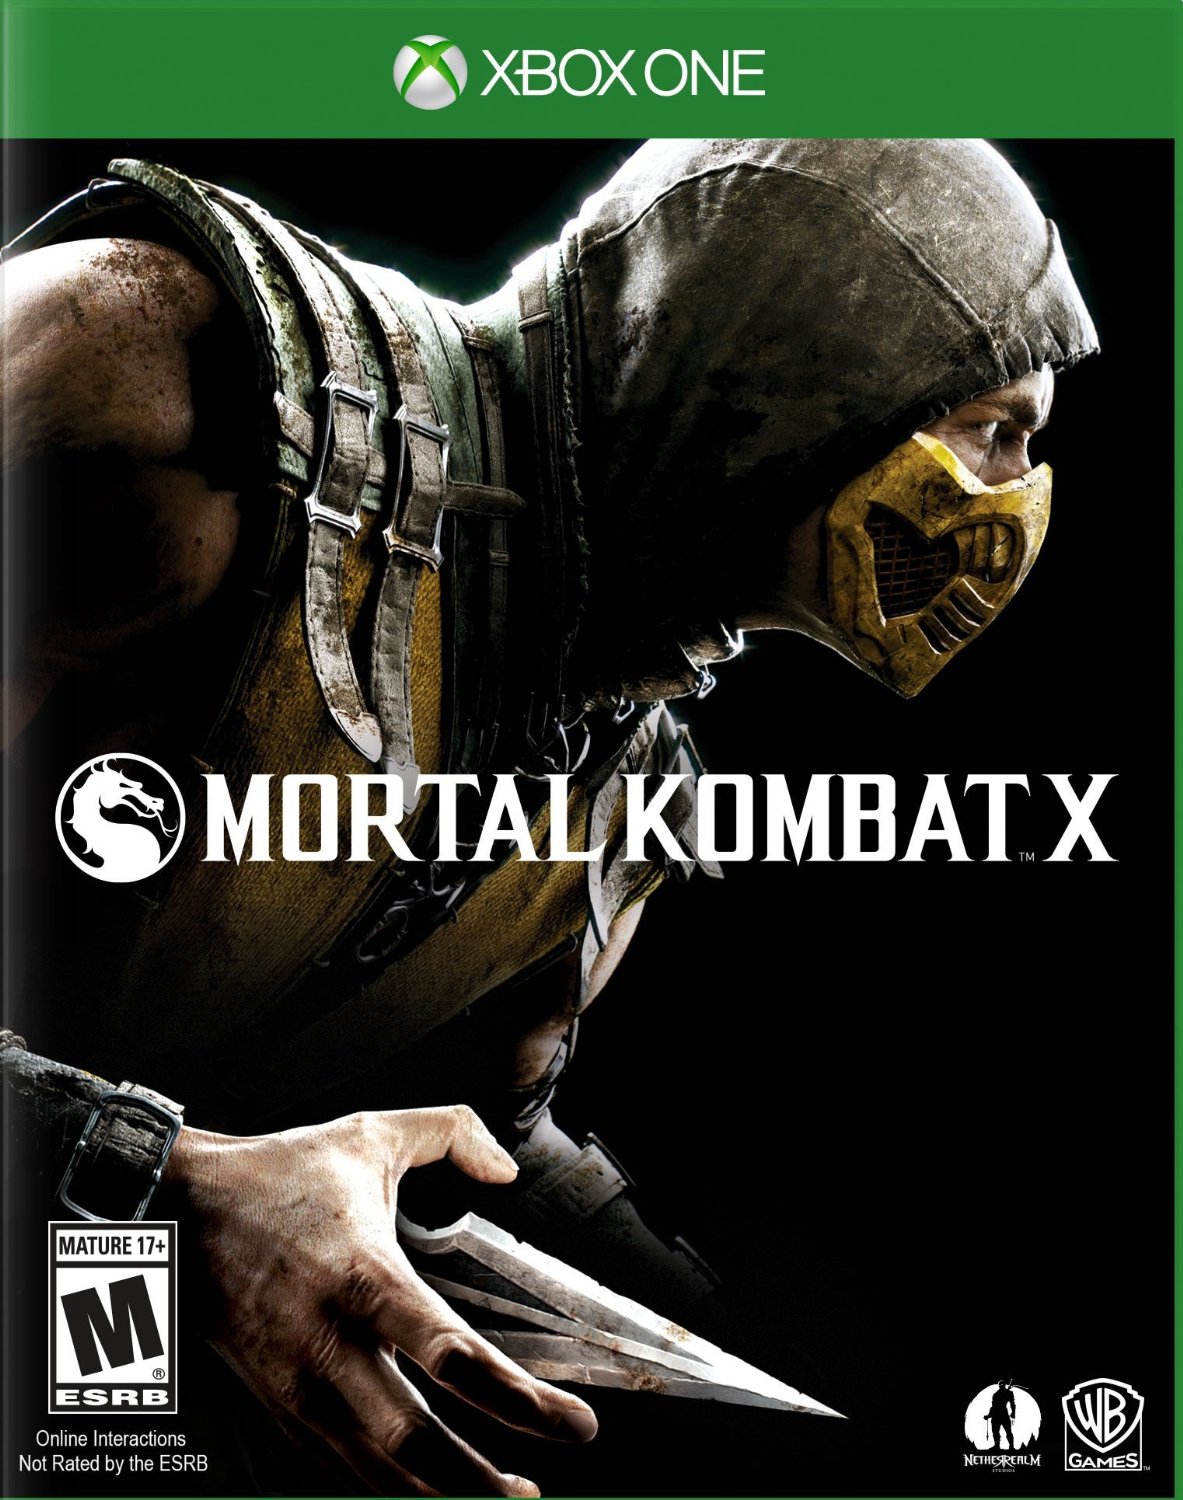 Mortal Kombat 4 Android 